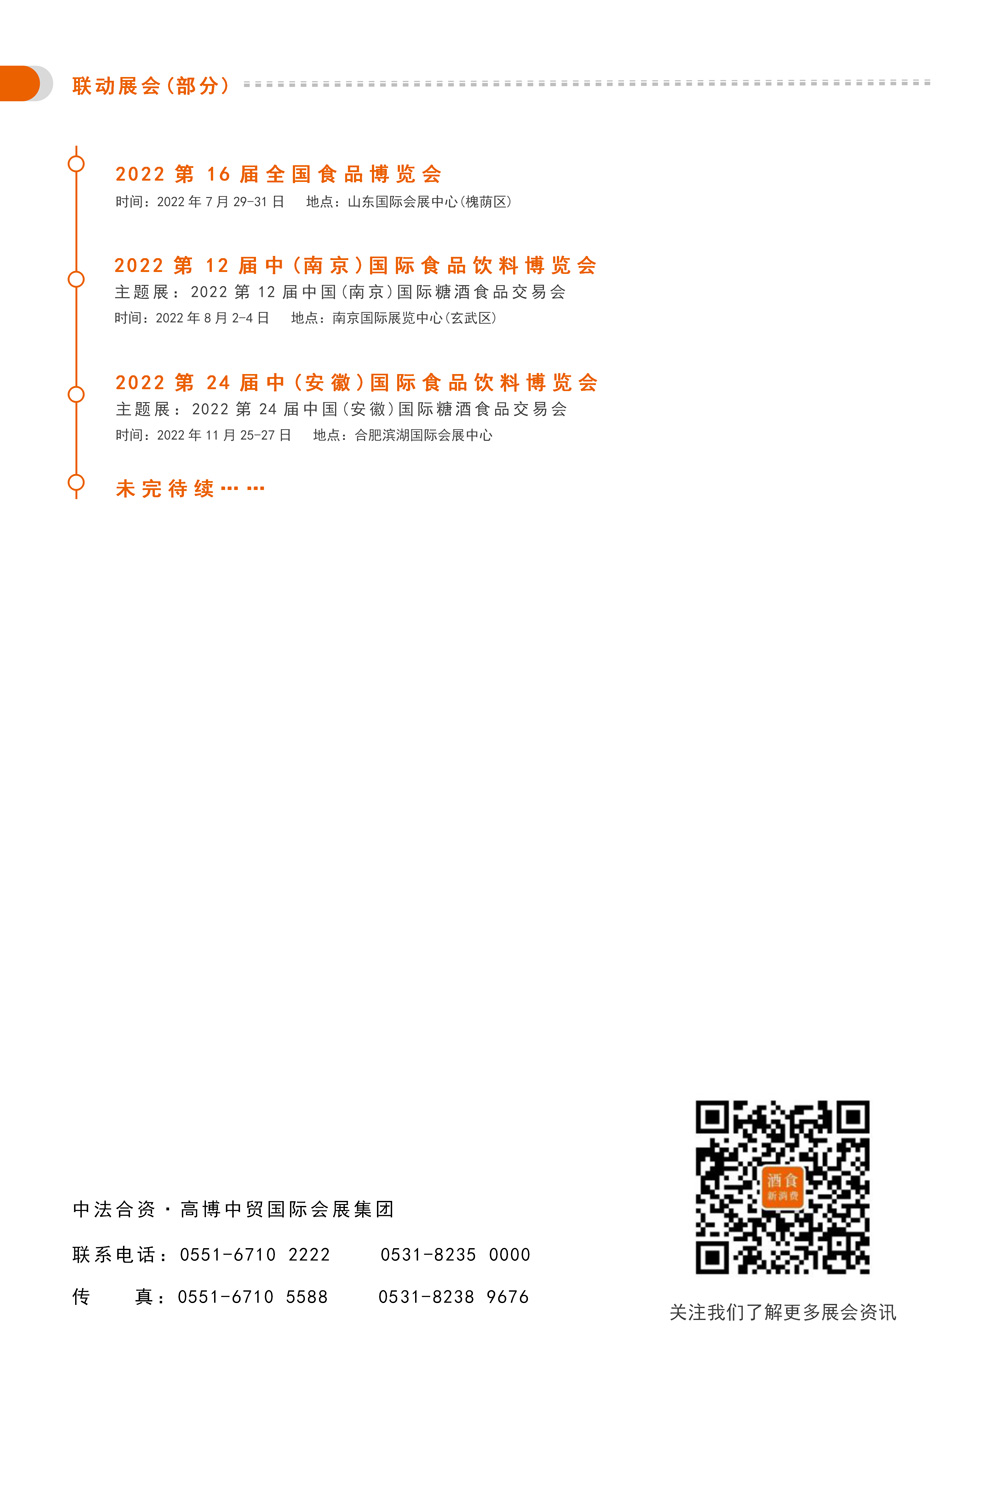 邀請函-2022第10屆中國（南京）國際食品飲料博覽會(1)_06.jpg